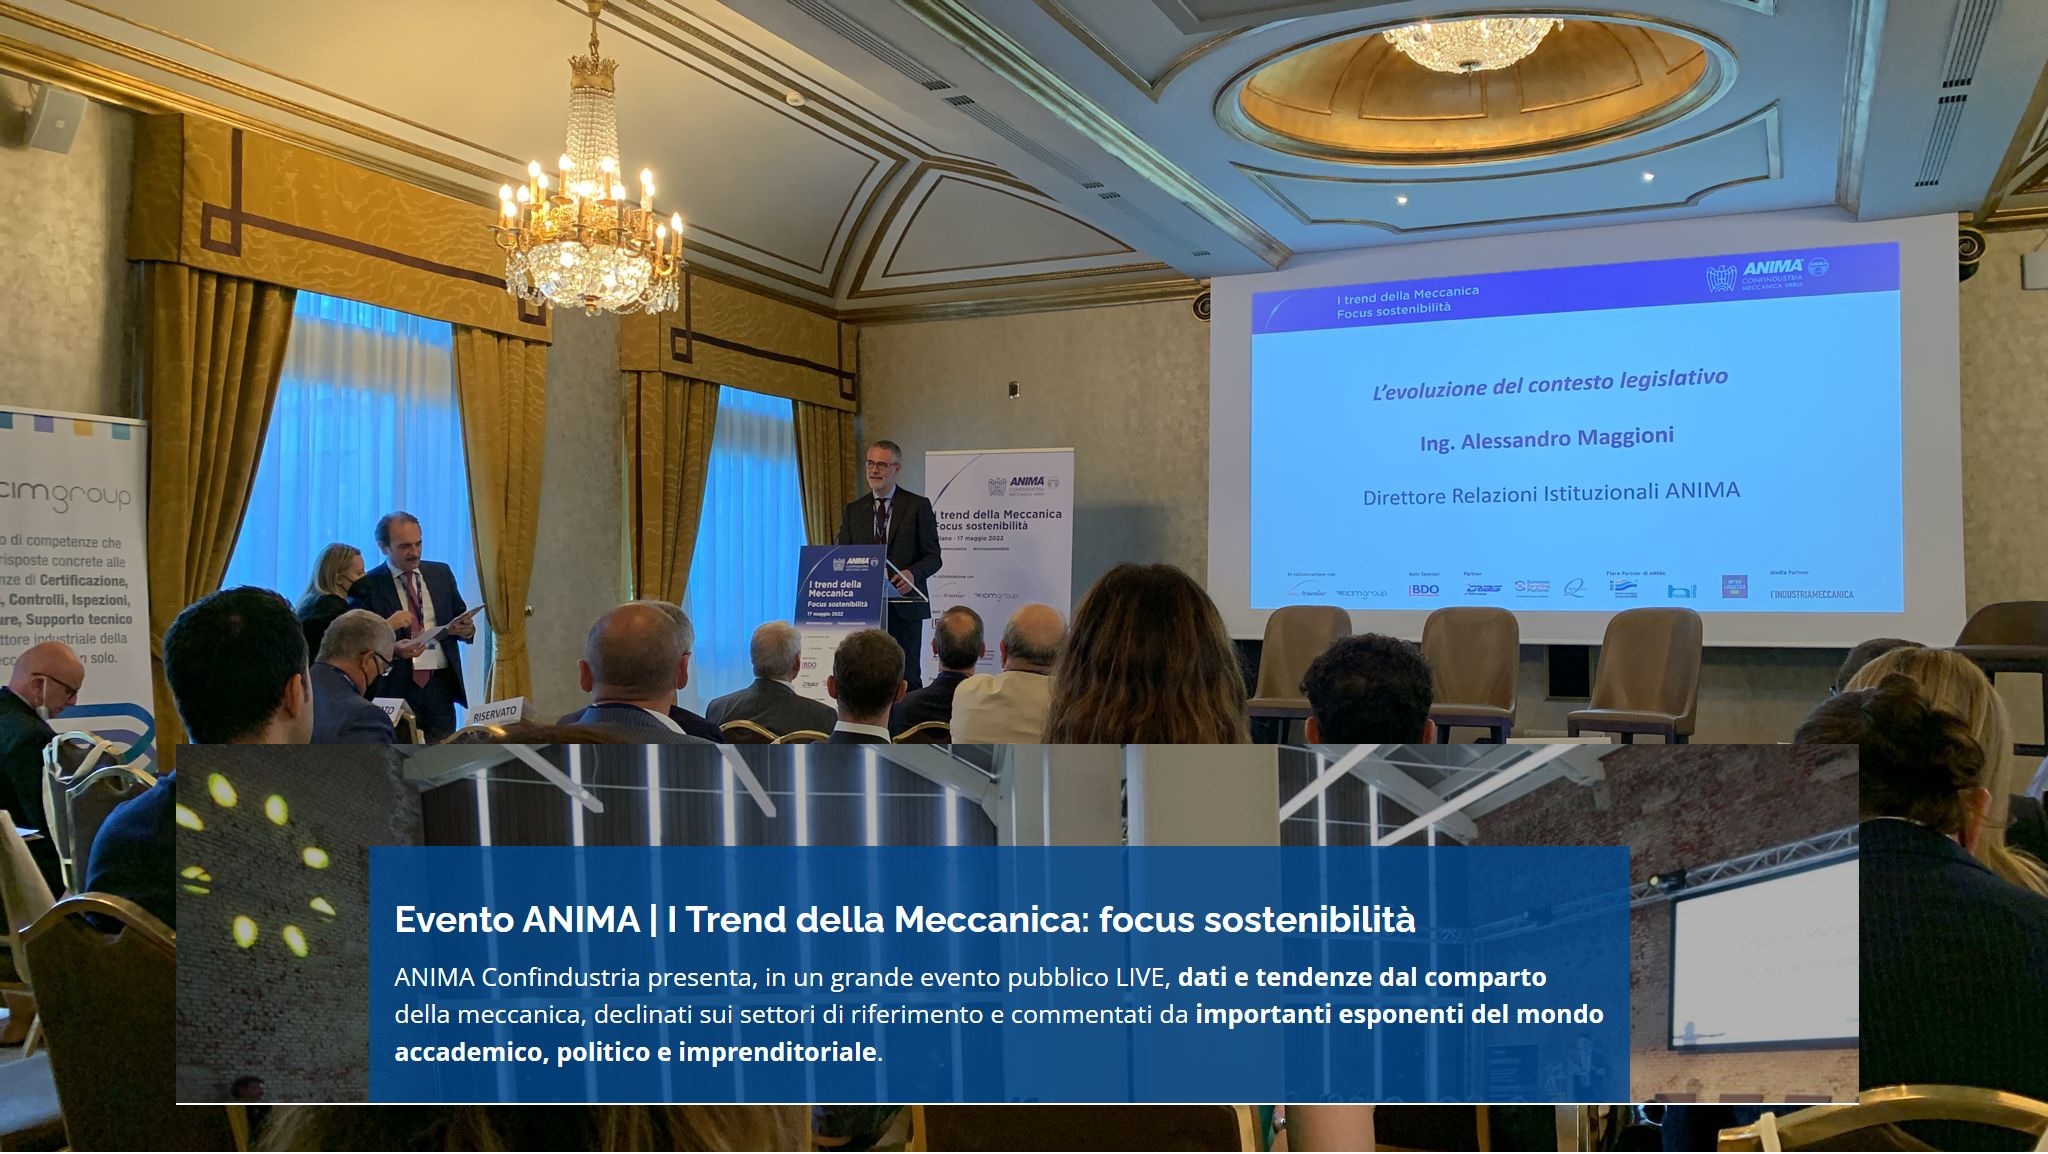 Focus-sostenibilita-ERP-Italia-partecipa-evento-ANIMA